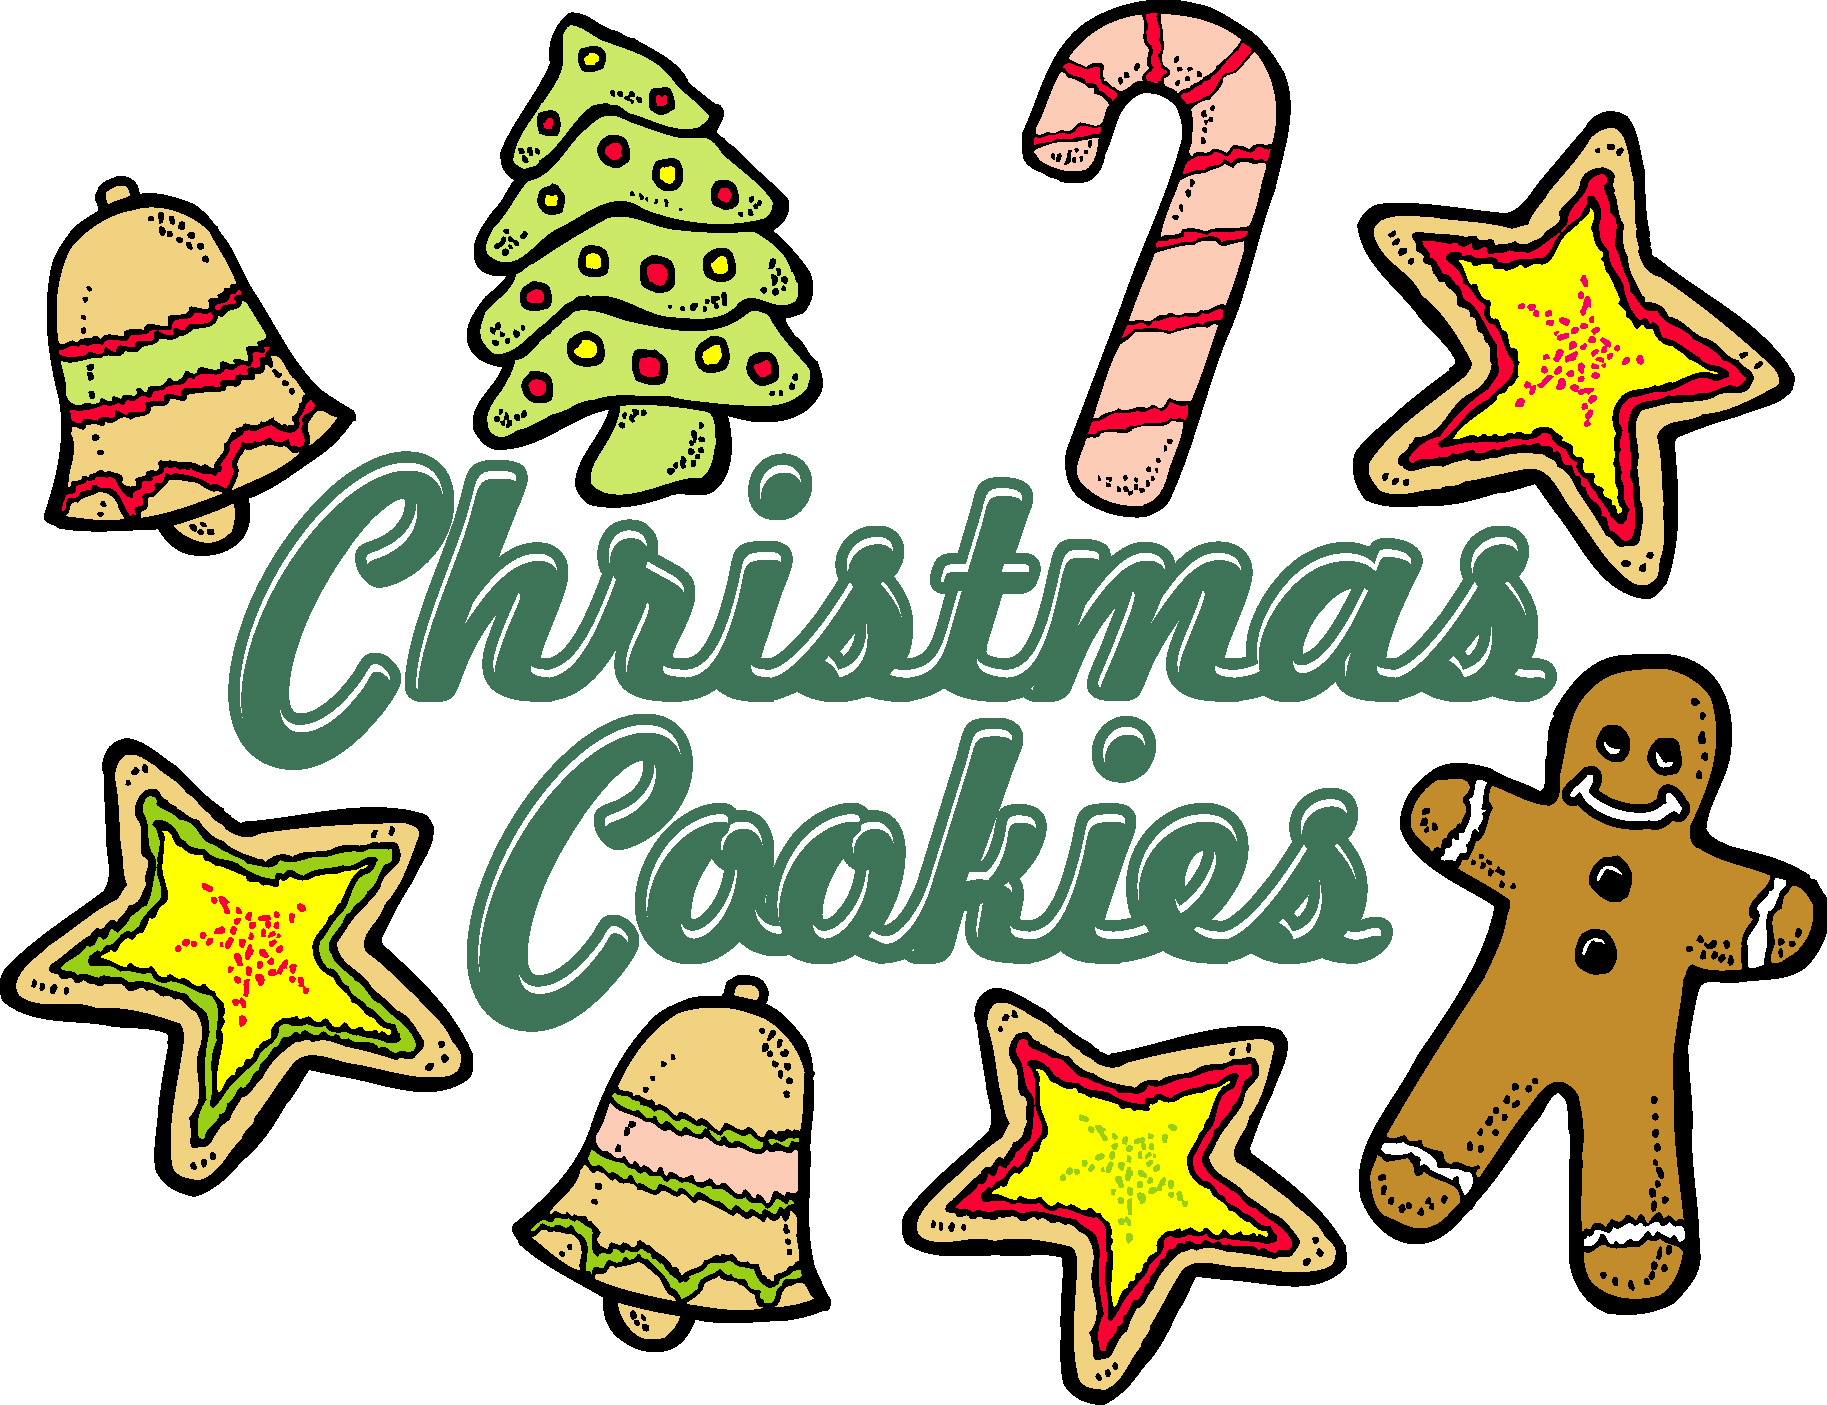 clipart cookies cookie walk